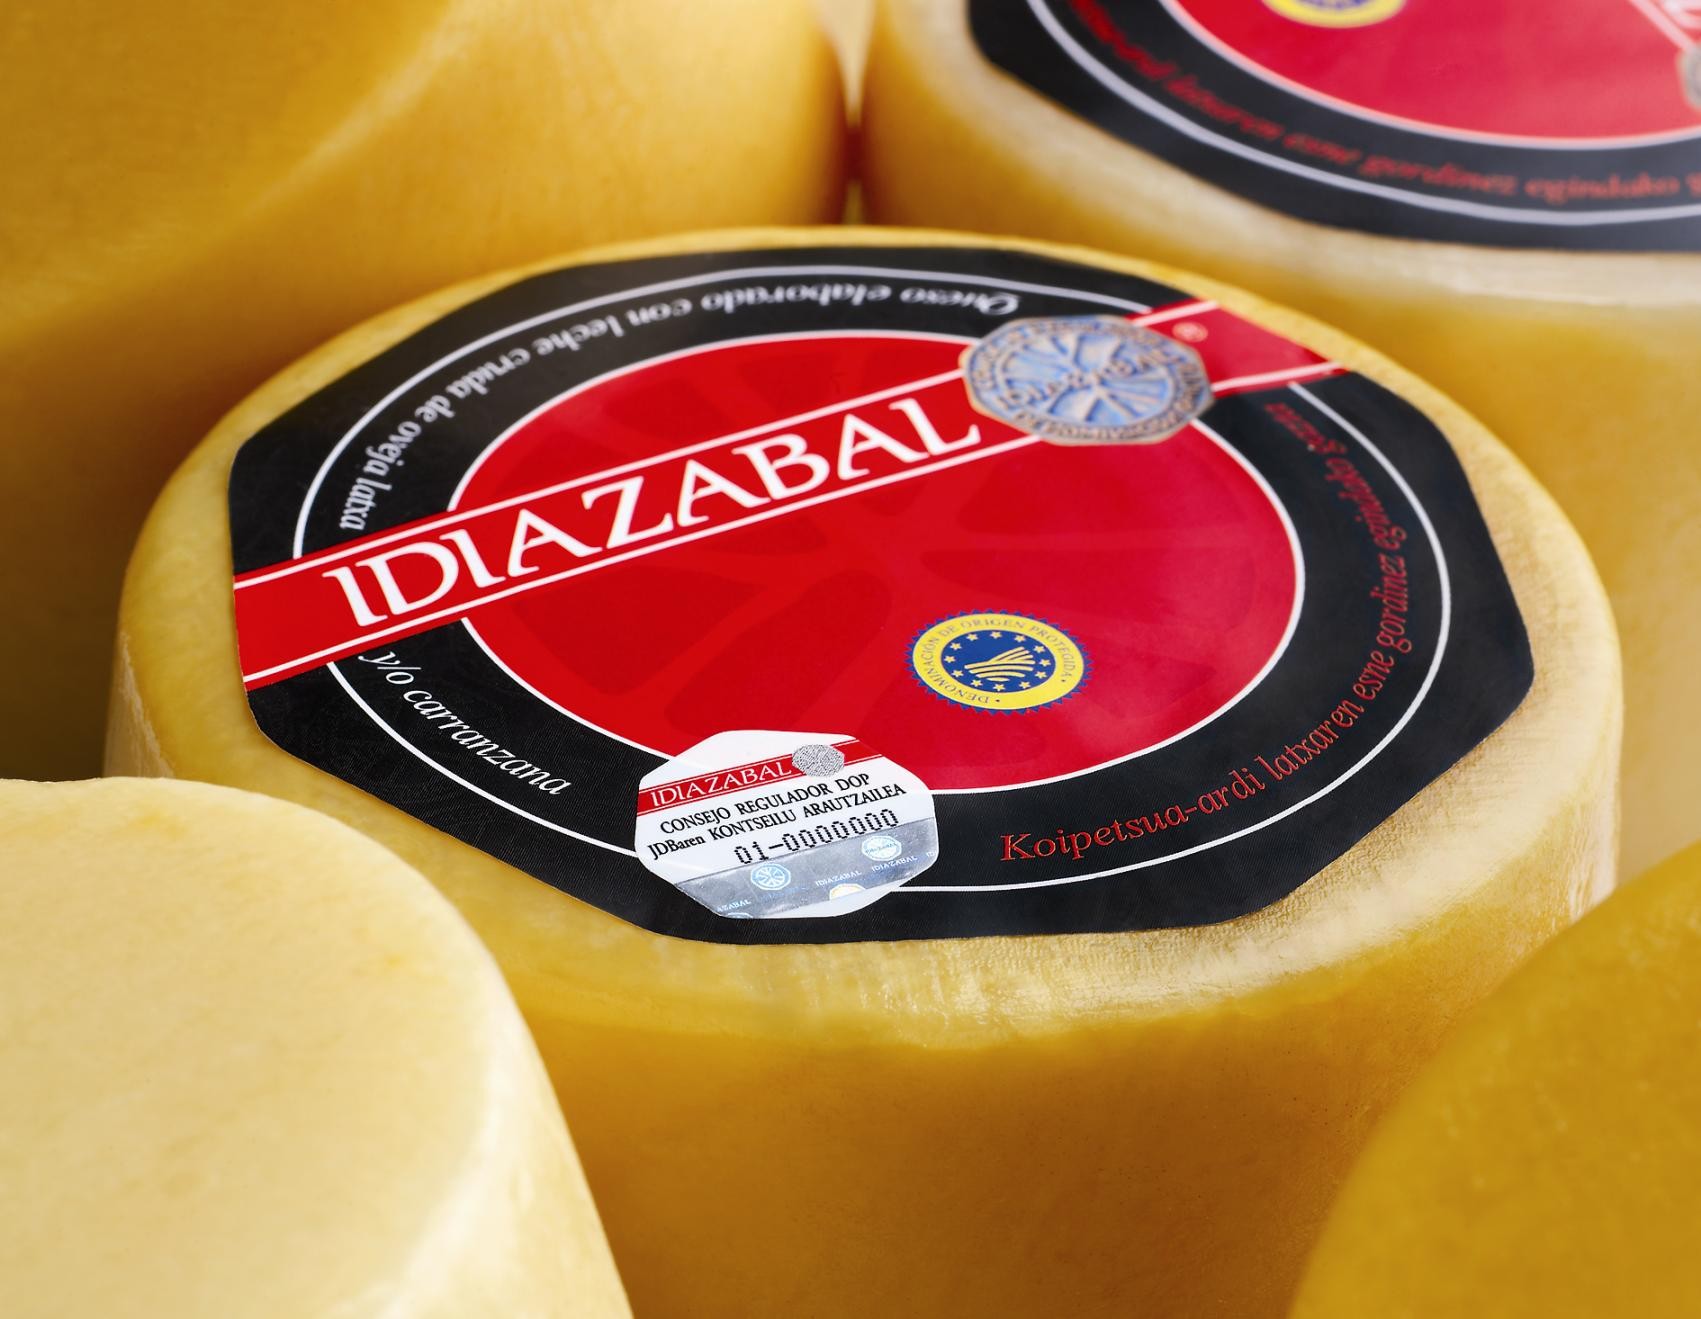 V Semana del queso Idiazábal de Pastor en Madrid | El Aderezo | Blog de